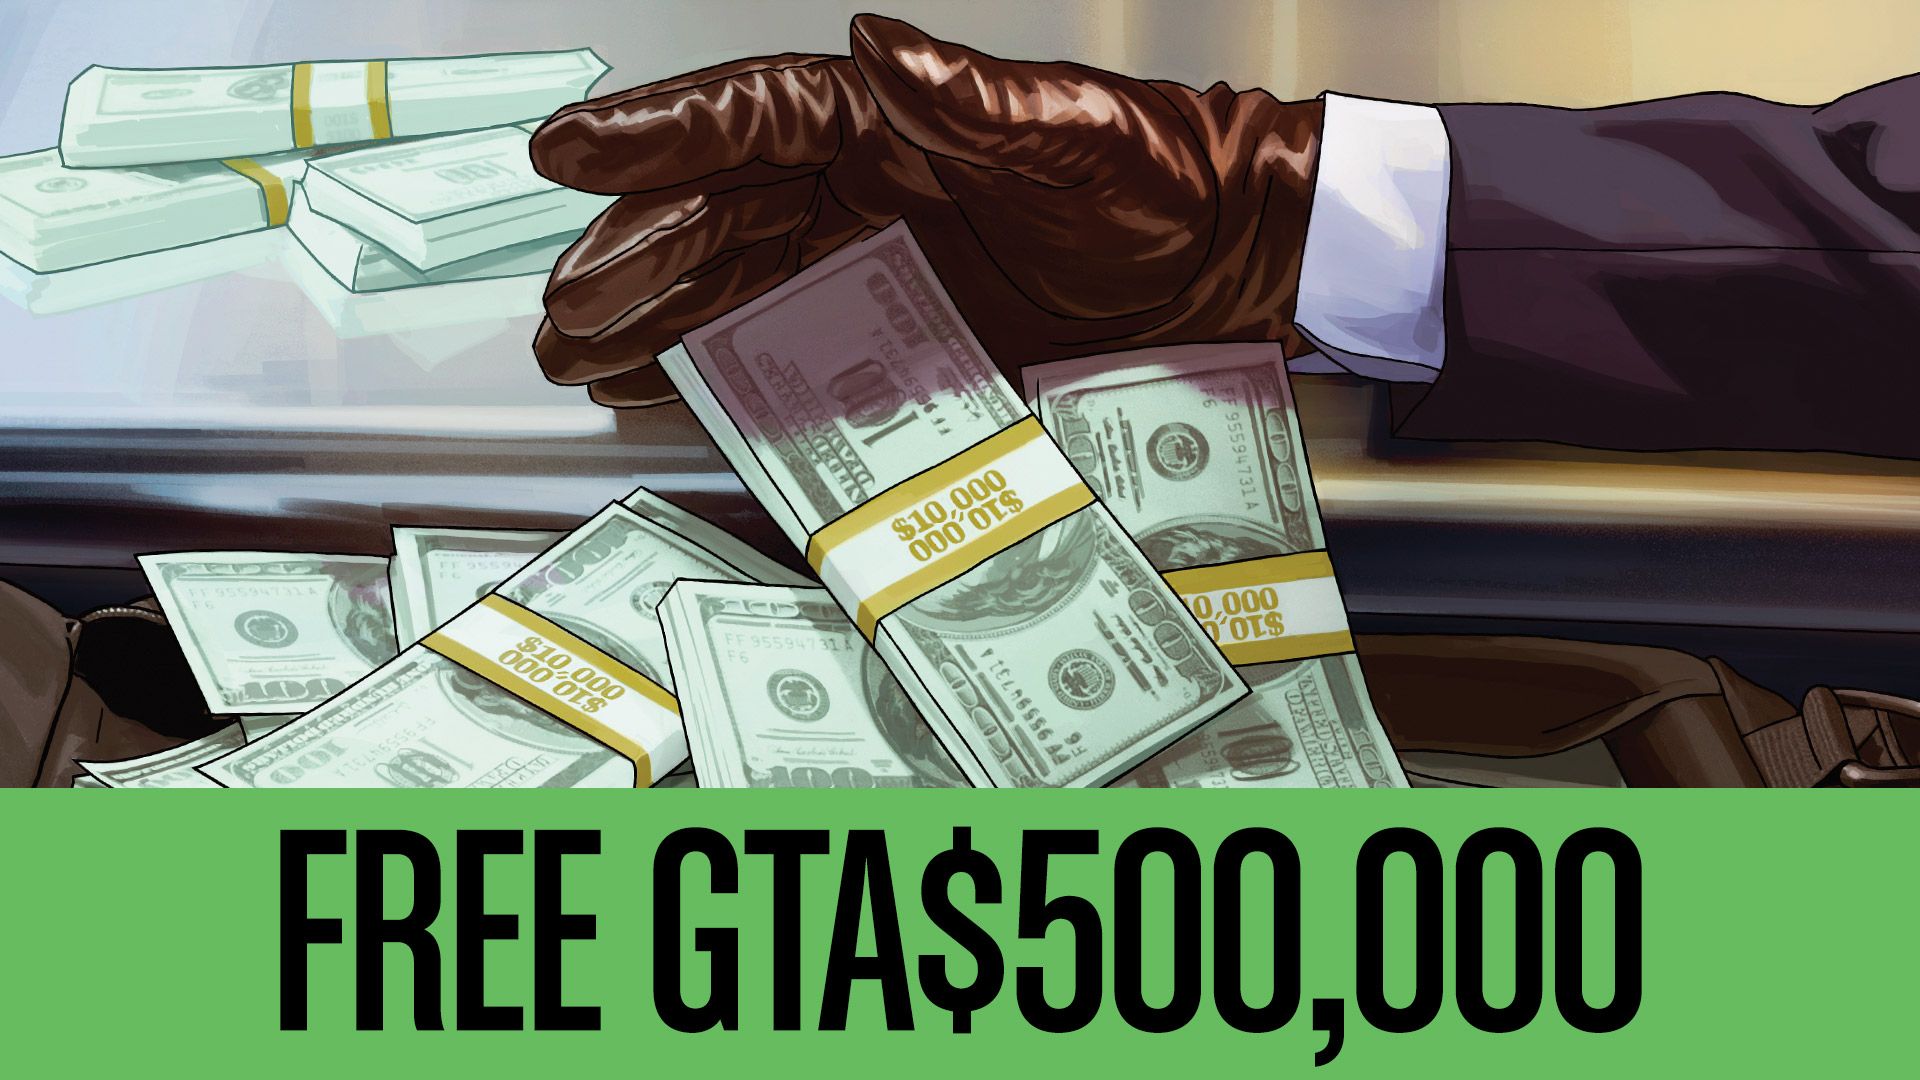 5月玩 Gta Online 送50萬美元 當然不是真錢俠盜獵車5 Gta5 Xoer